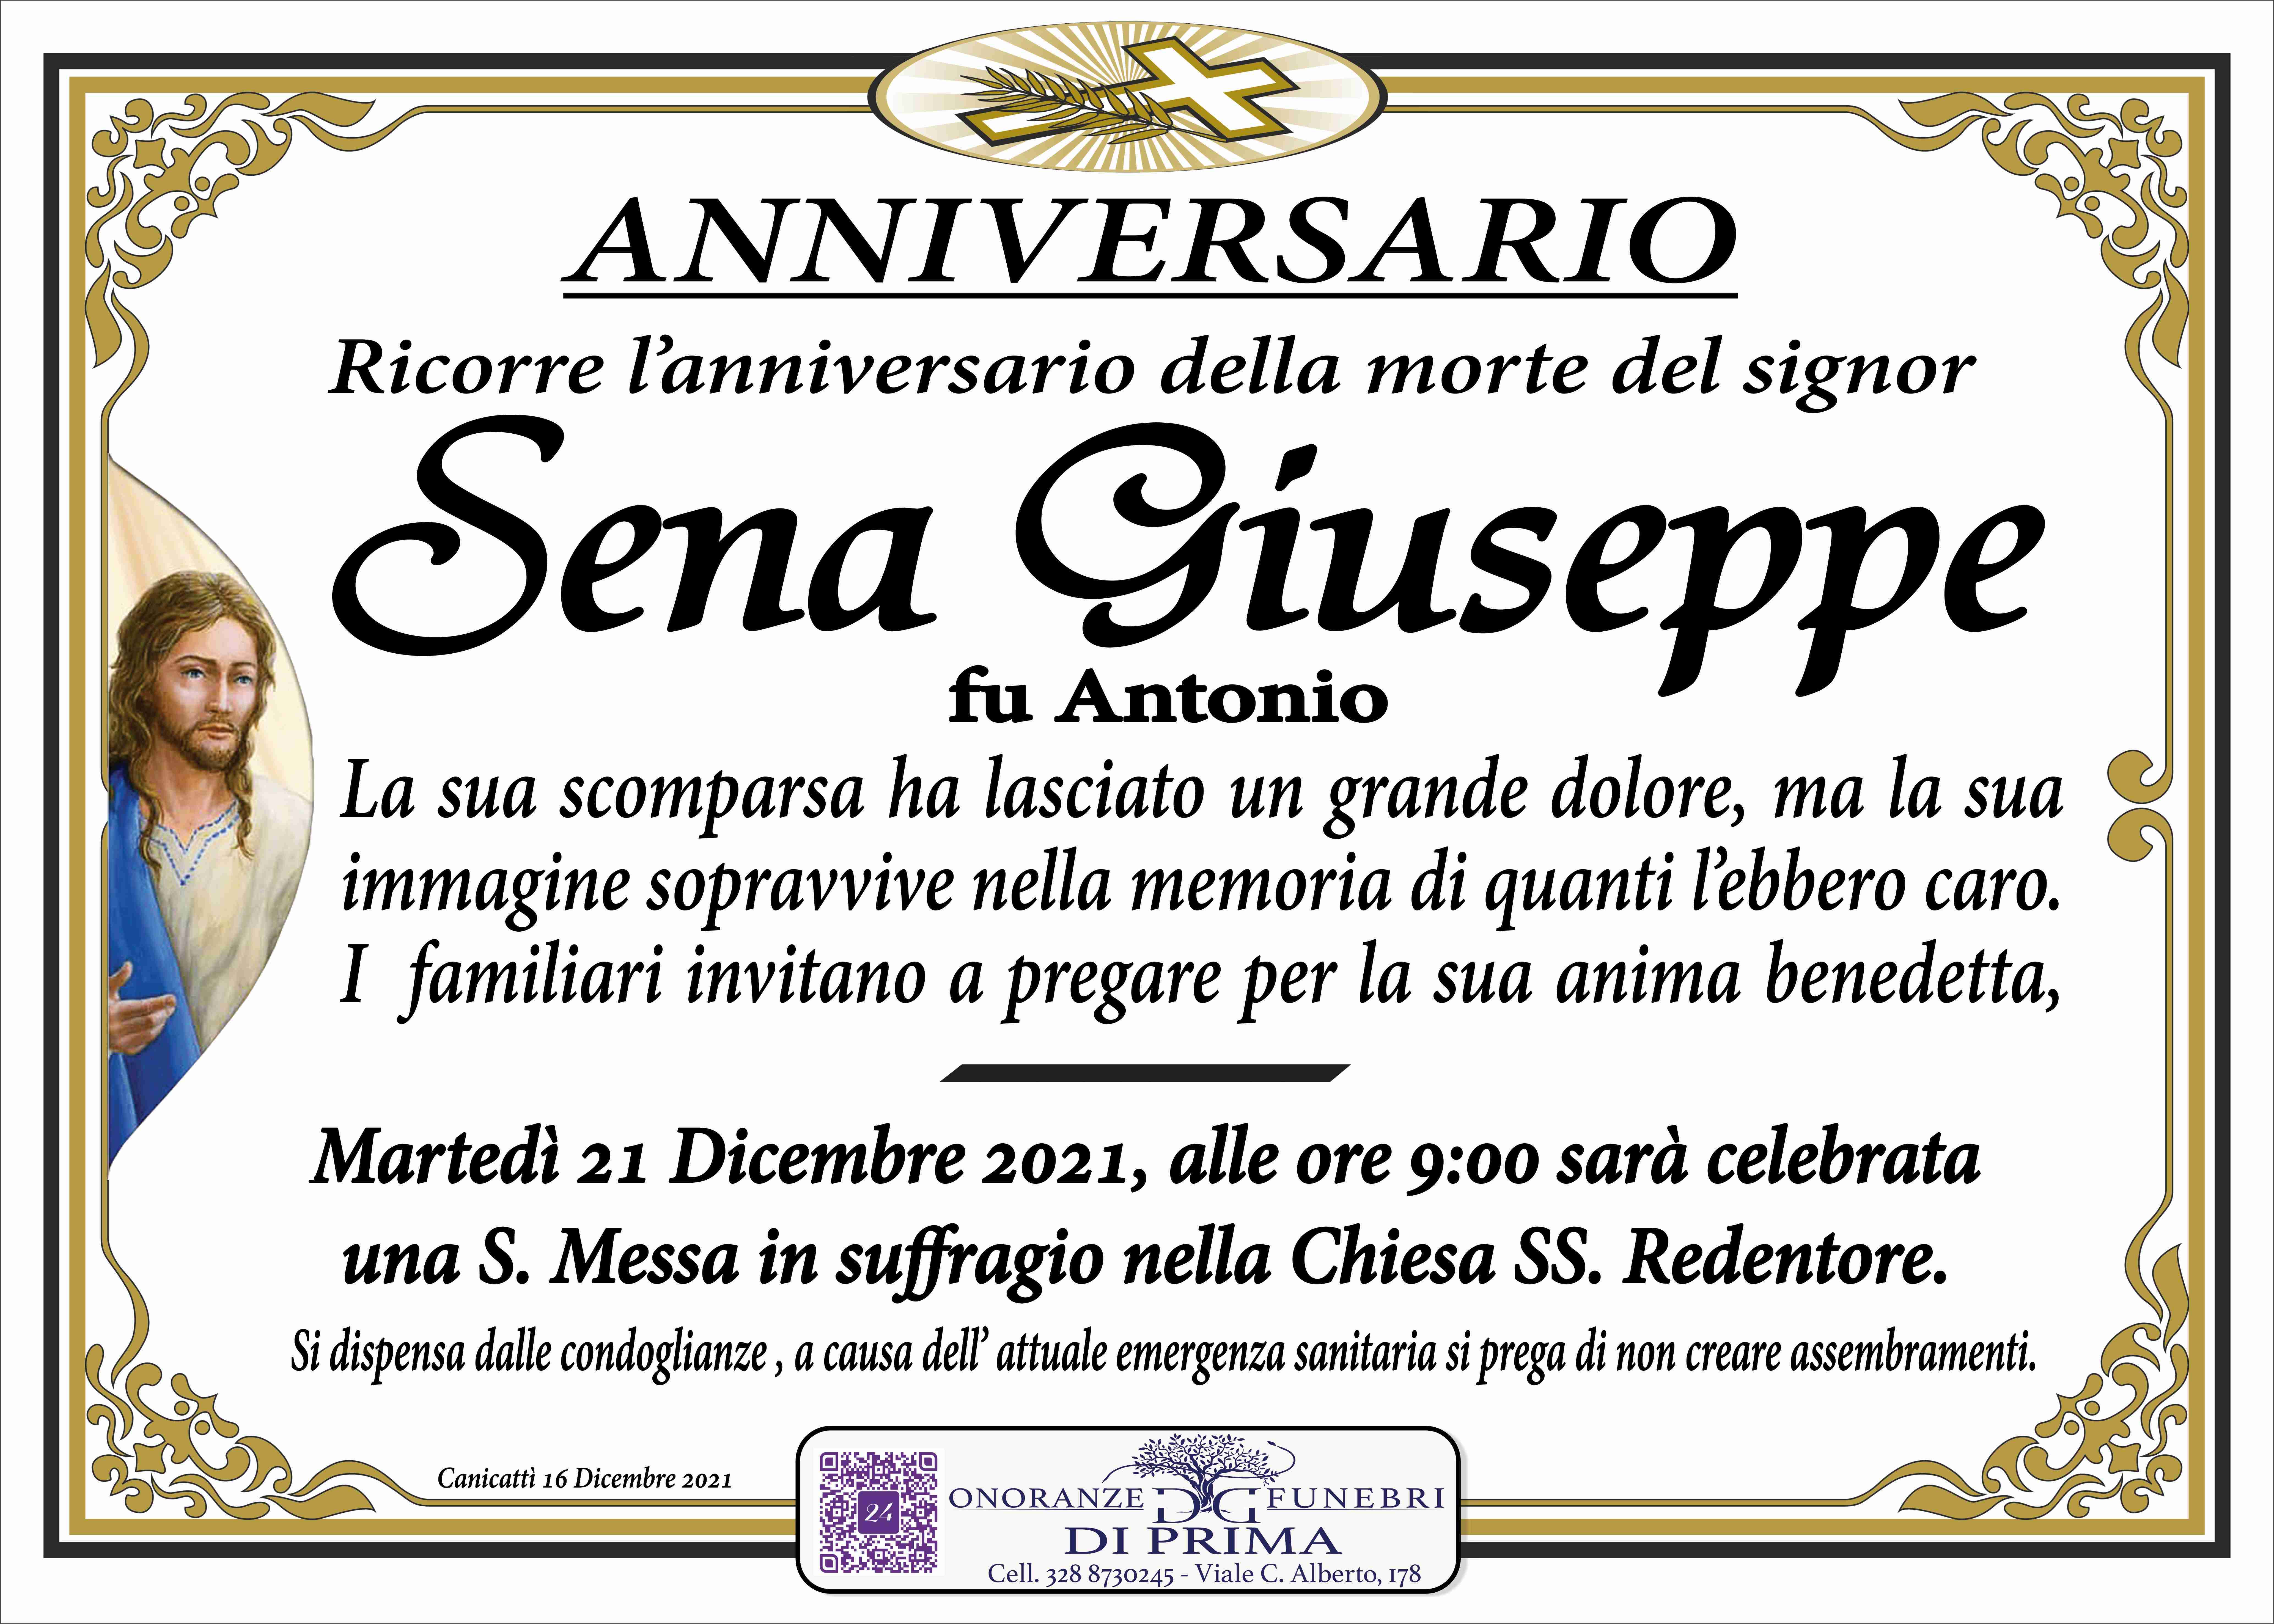 Giuseppe Sena